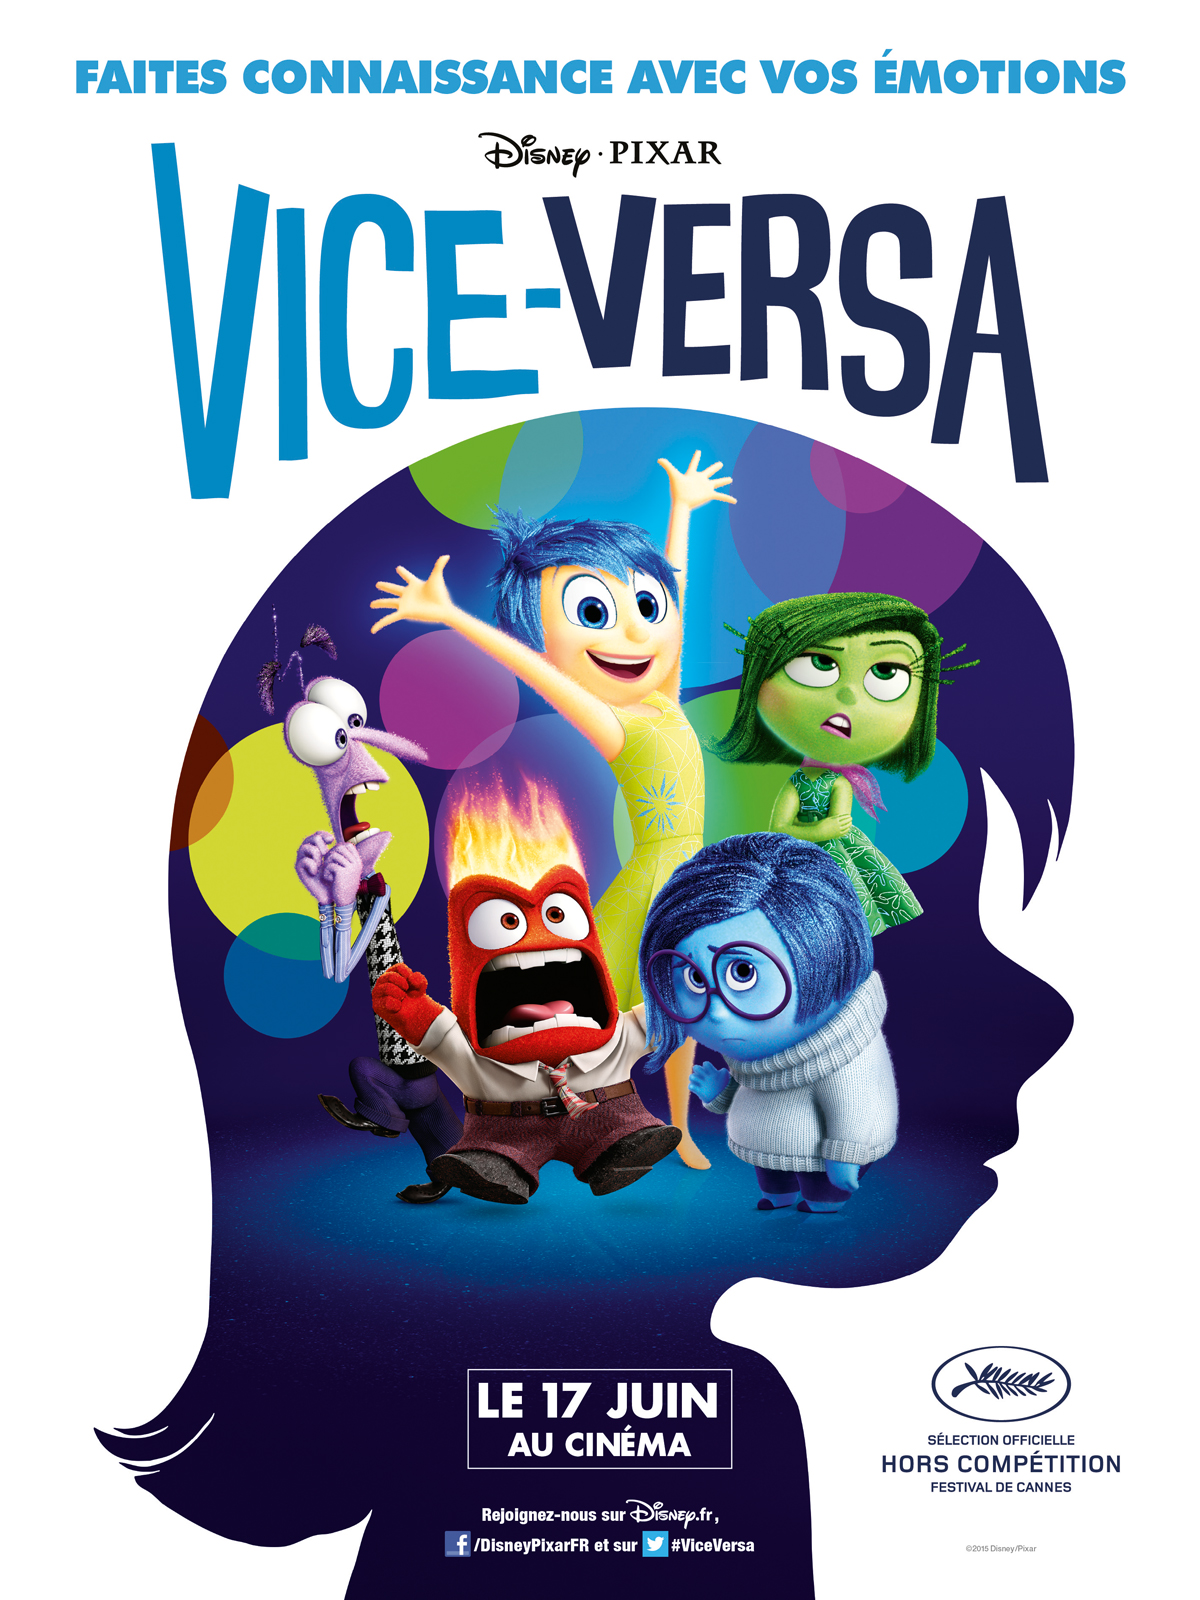 [Ciné] Critique : Vice Versa (Pixar) » LegolasGamer